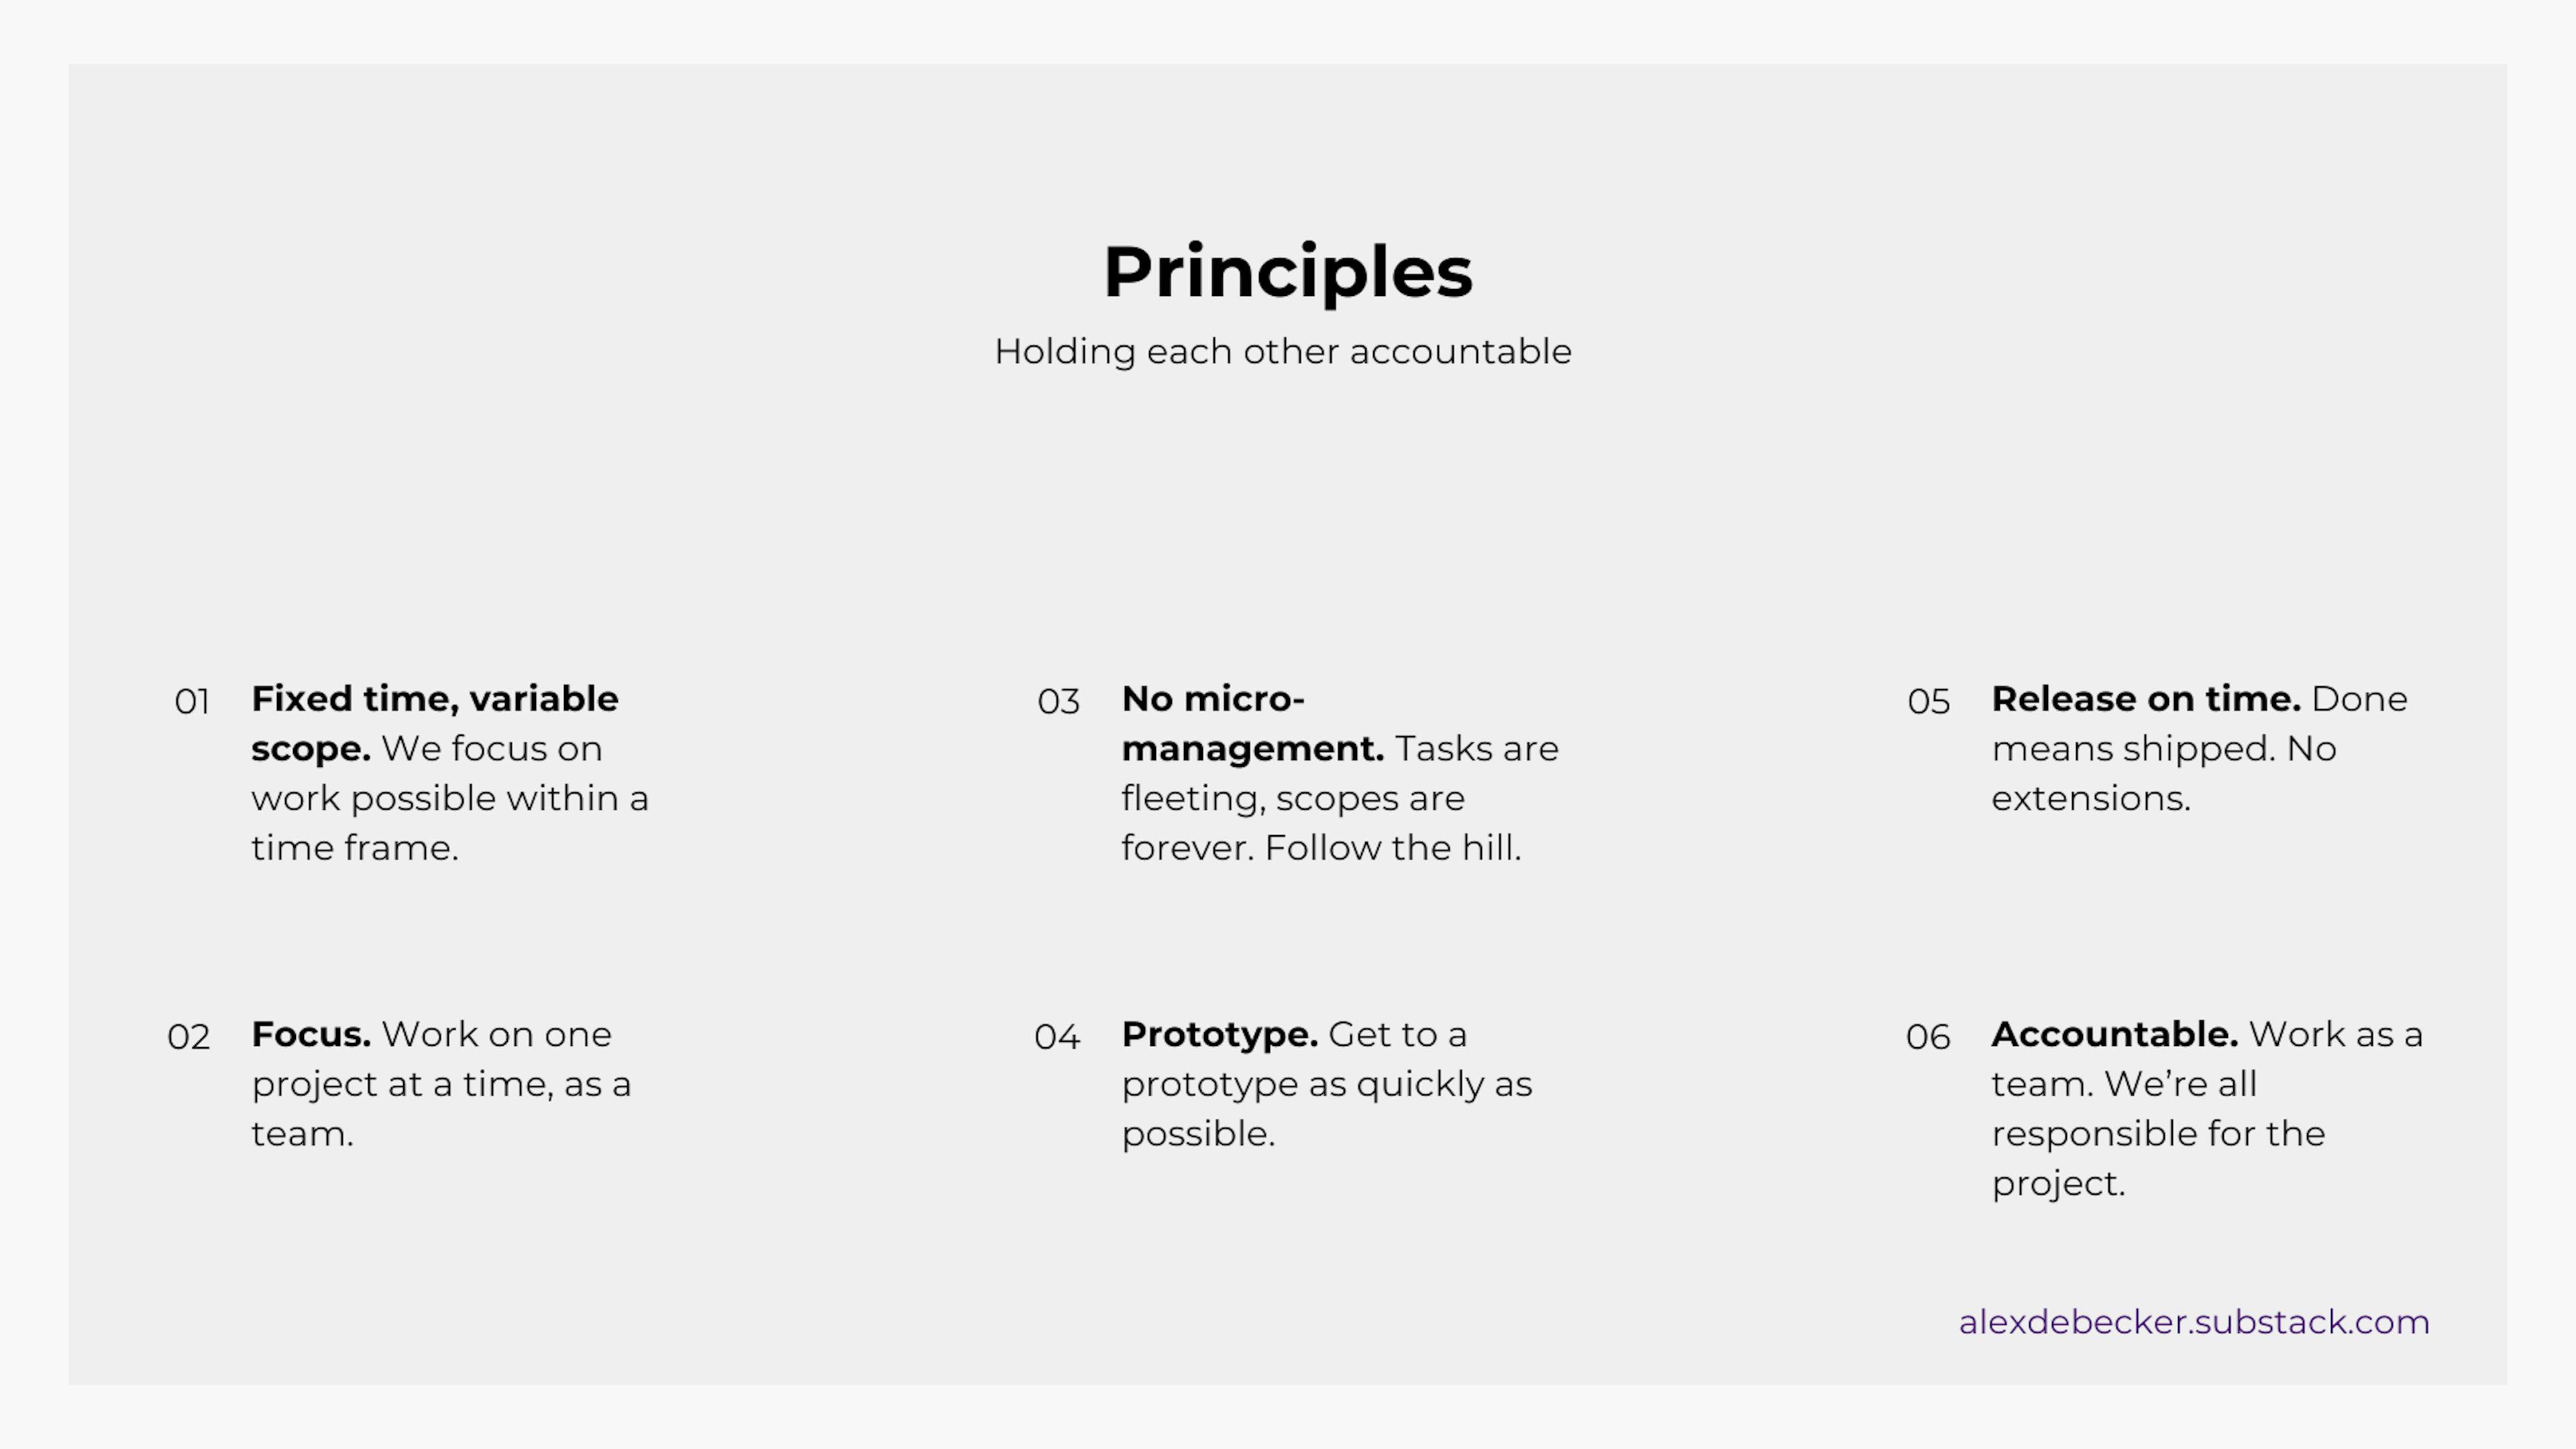 내부 프레젠테이션 자료의 슬라이드 12: 원칙